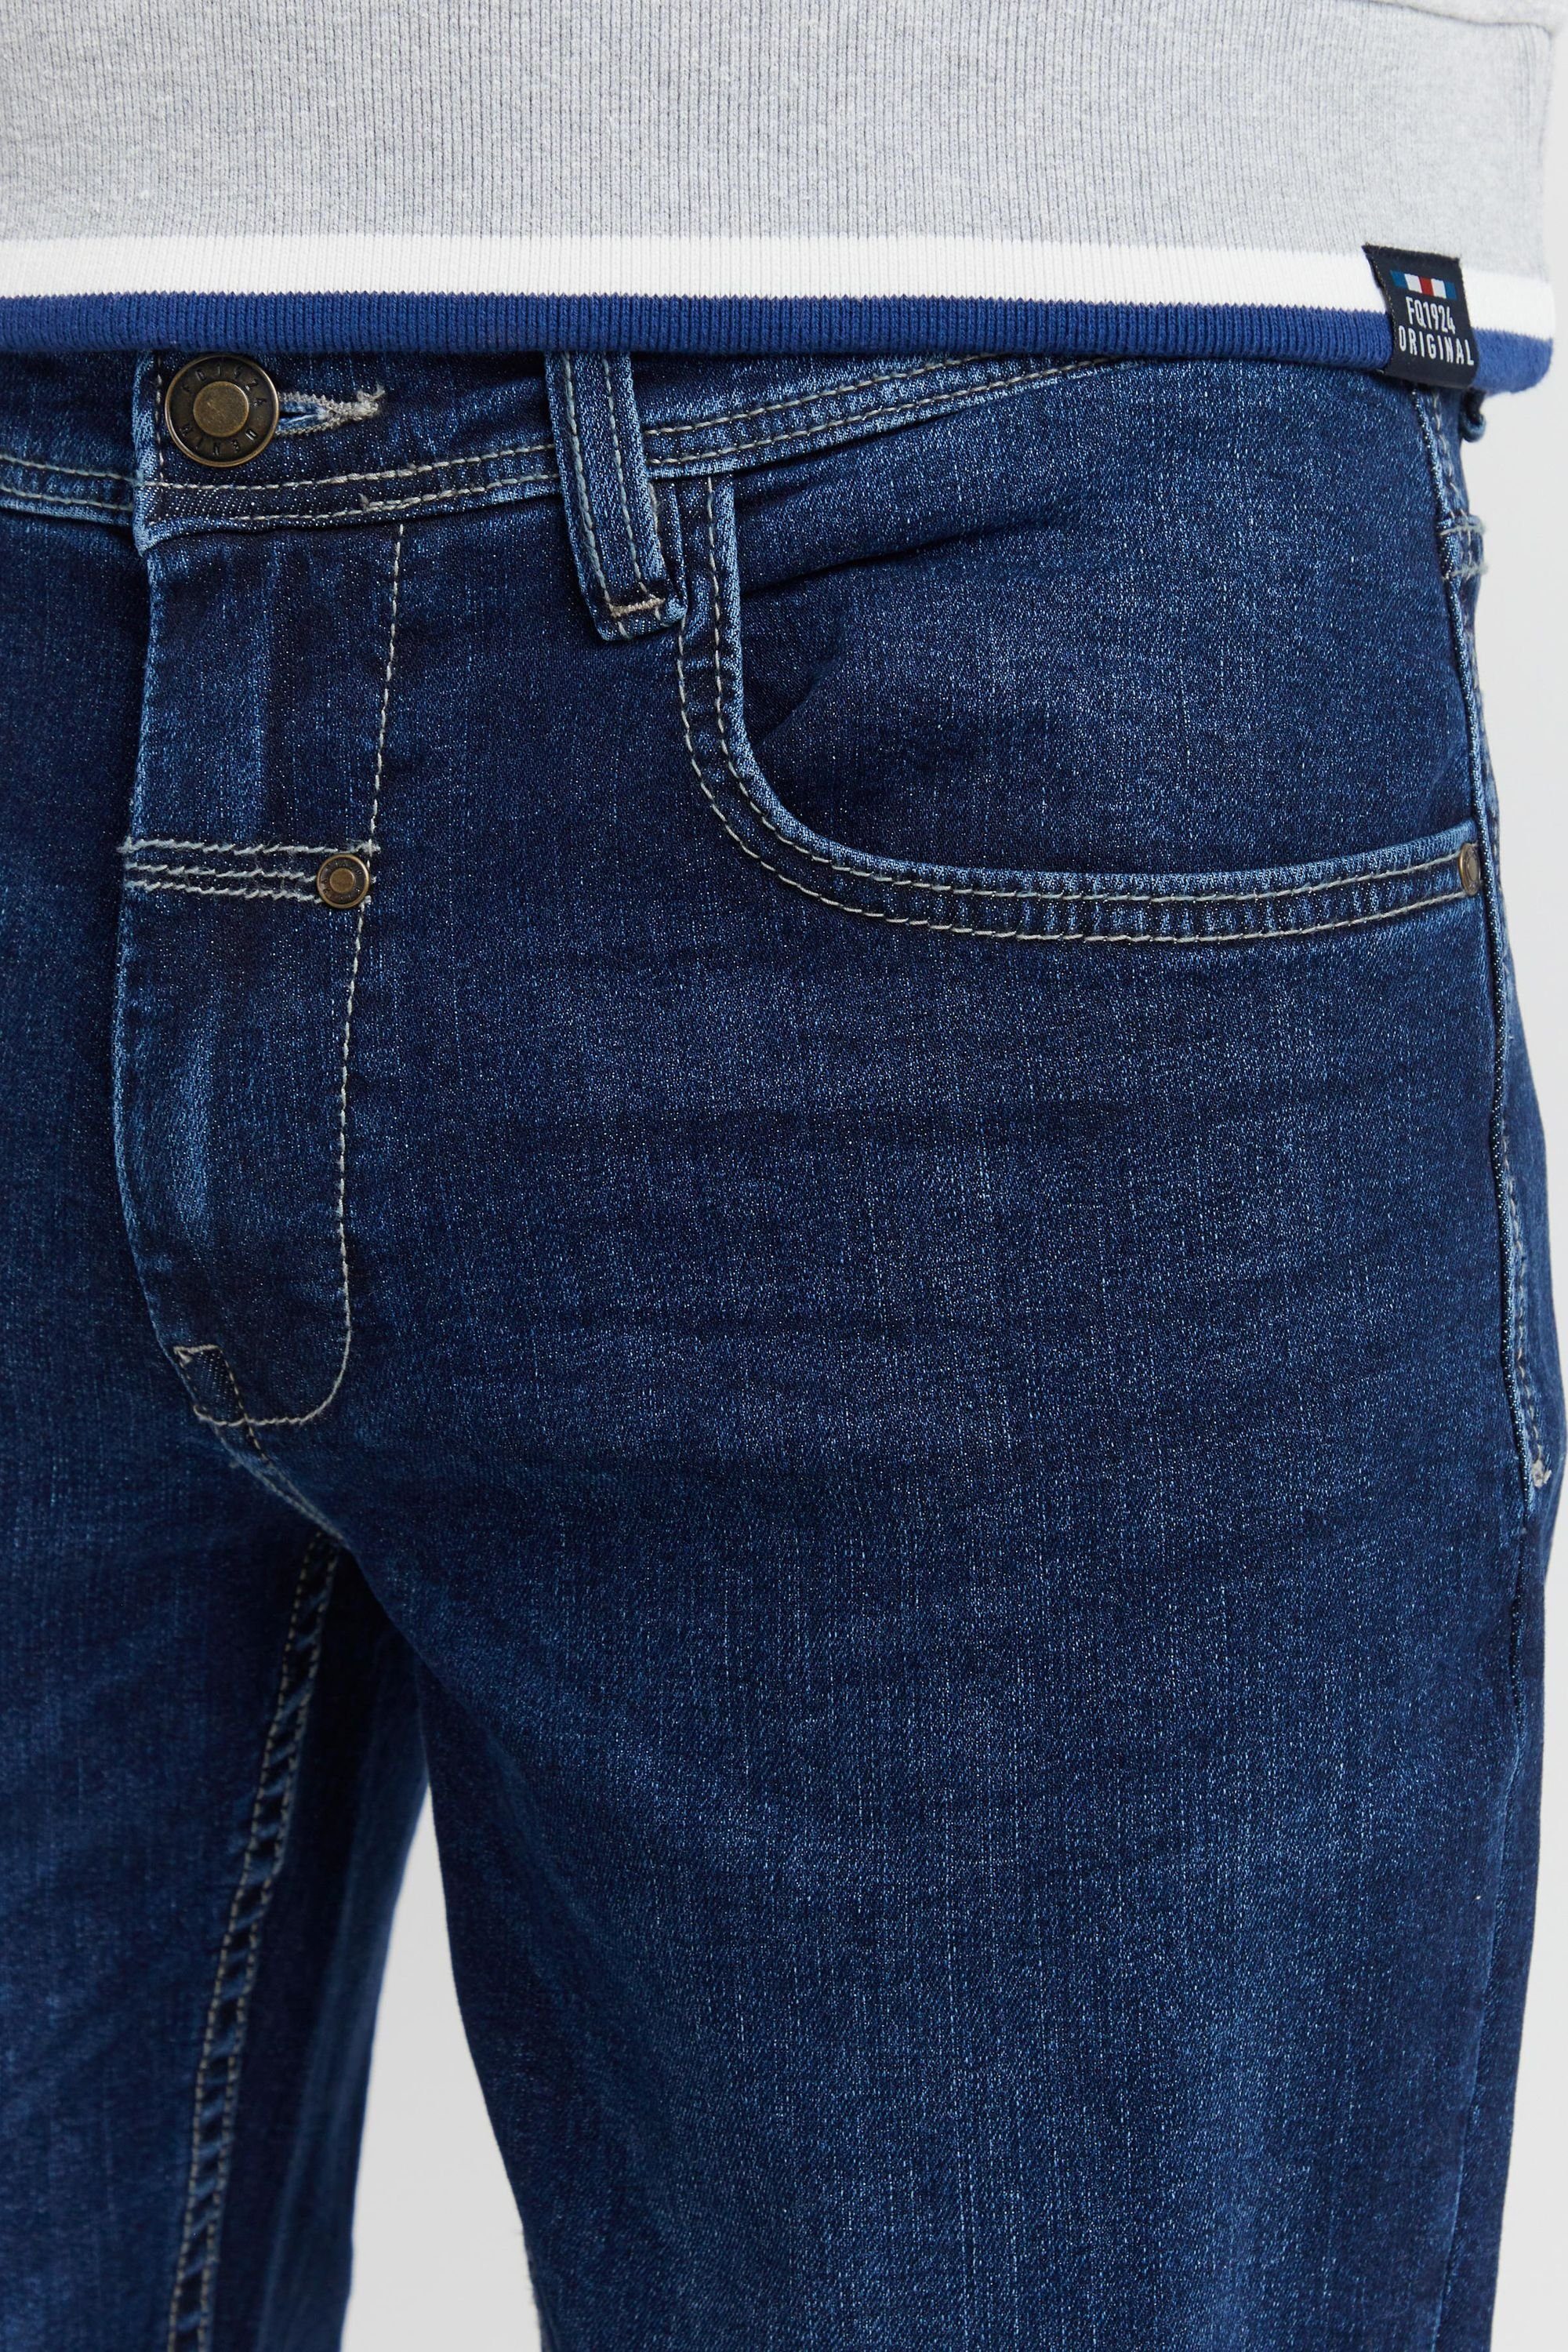 FQ1924 FQ1924 blue dark Denim FQRoman 5-Pocket-Jeans